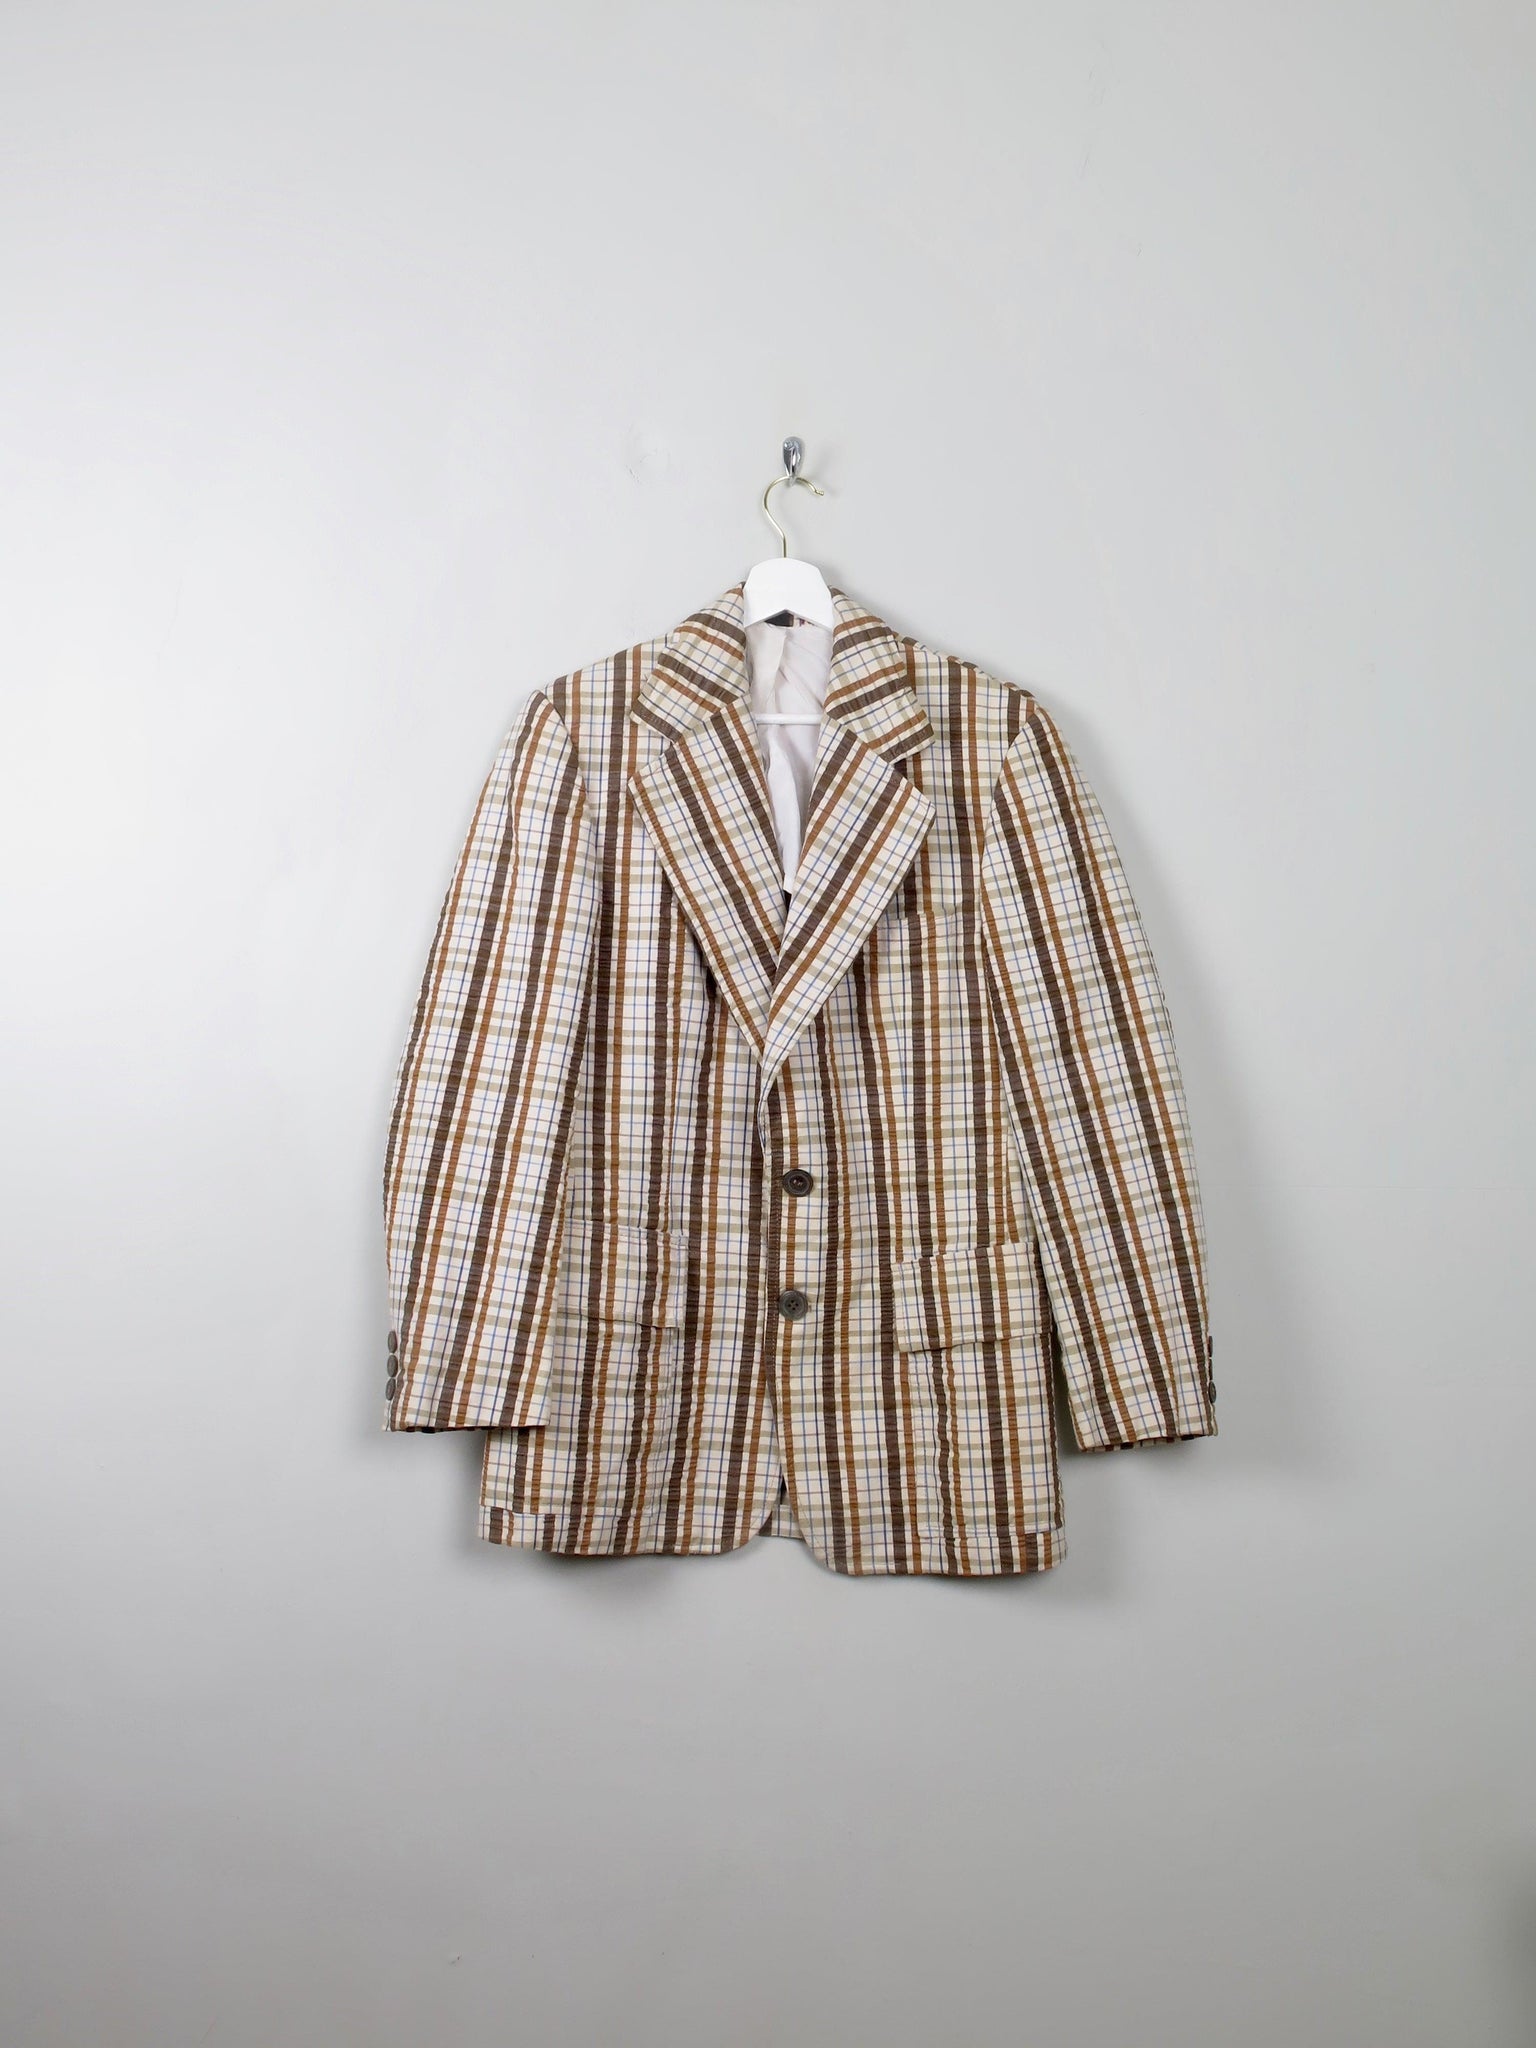 Men's Vintage Check Boater Style Jacket 38" - The Harlequin